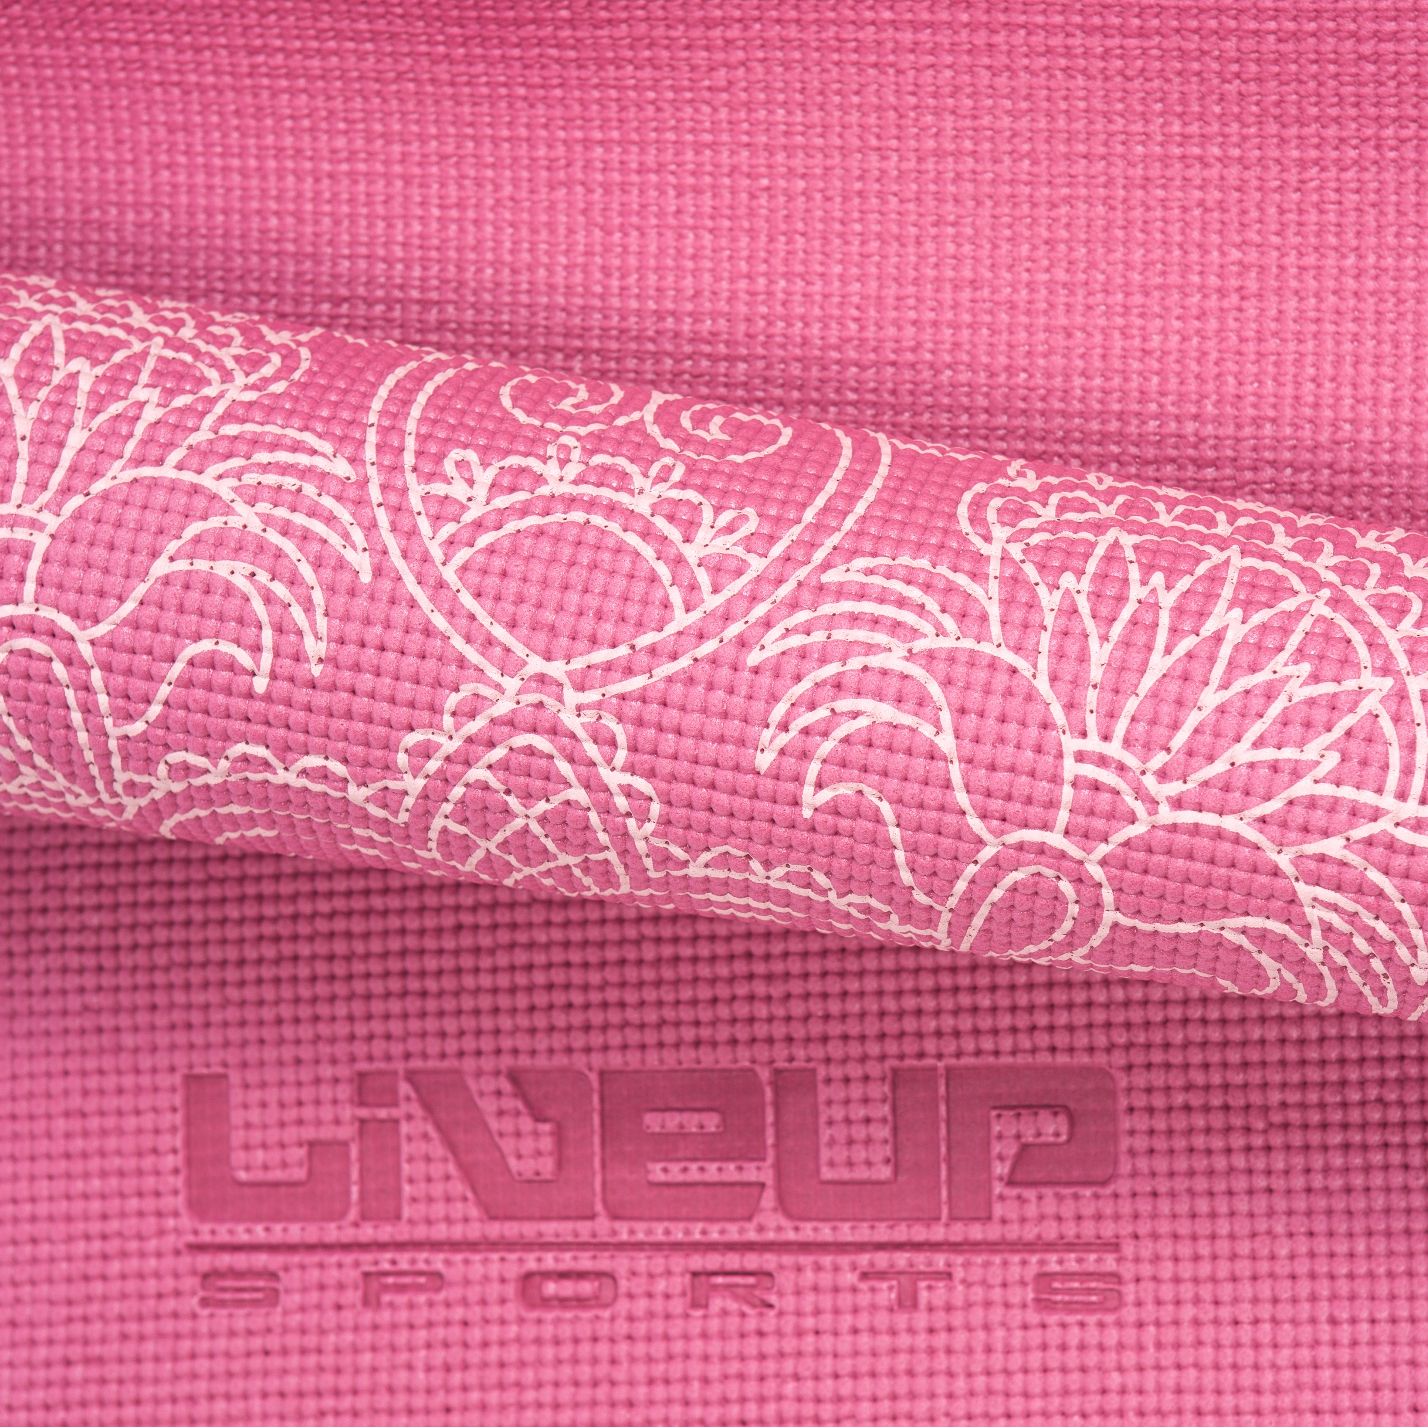 LIVEUP Коврик для йоги PVC Yoga Mat Printed Red 6 мм Артикул: LS3231c-06r